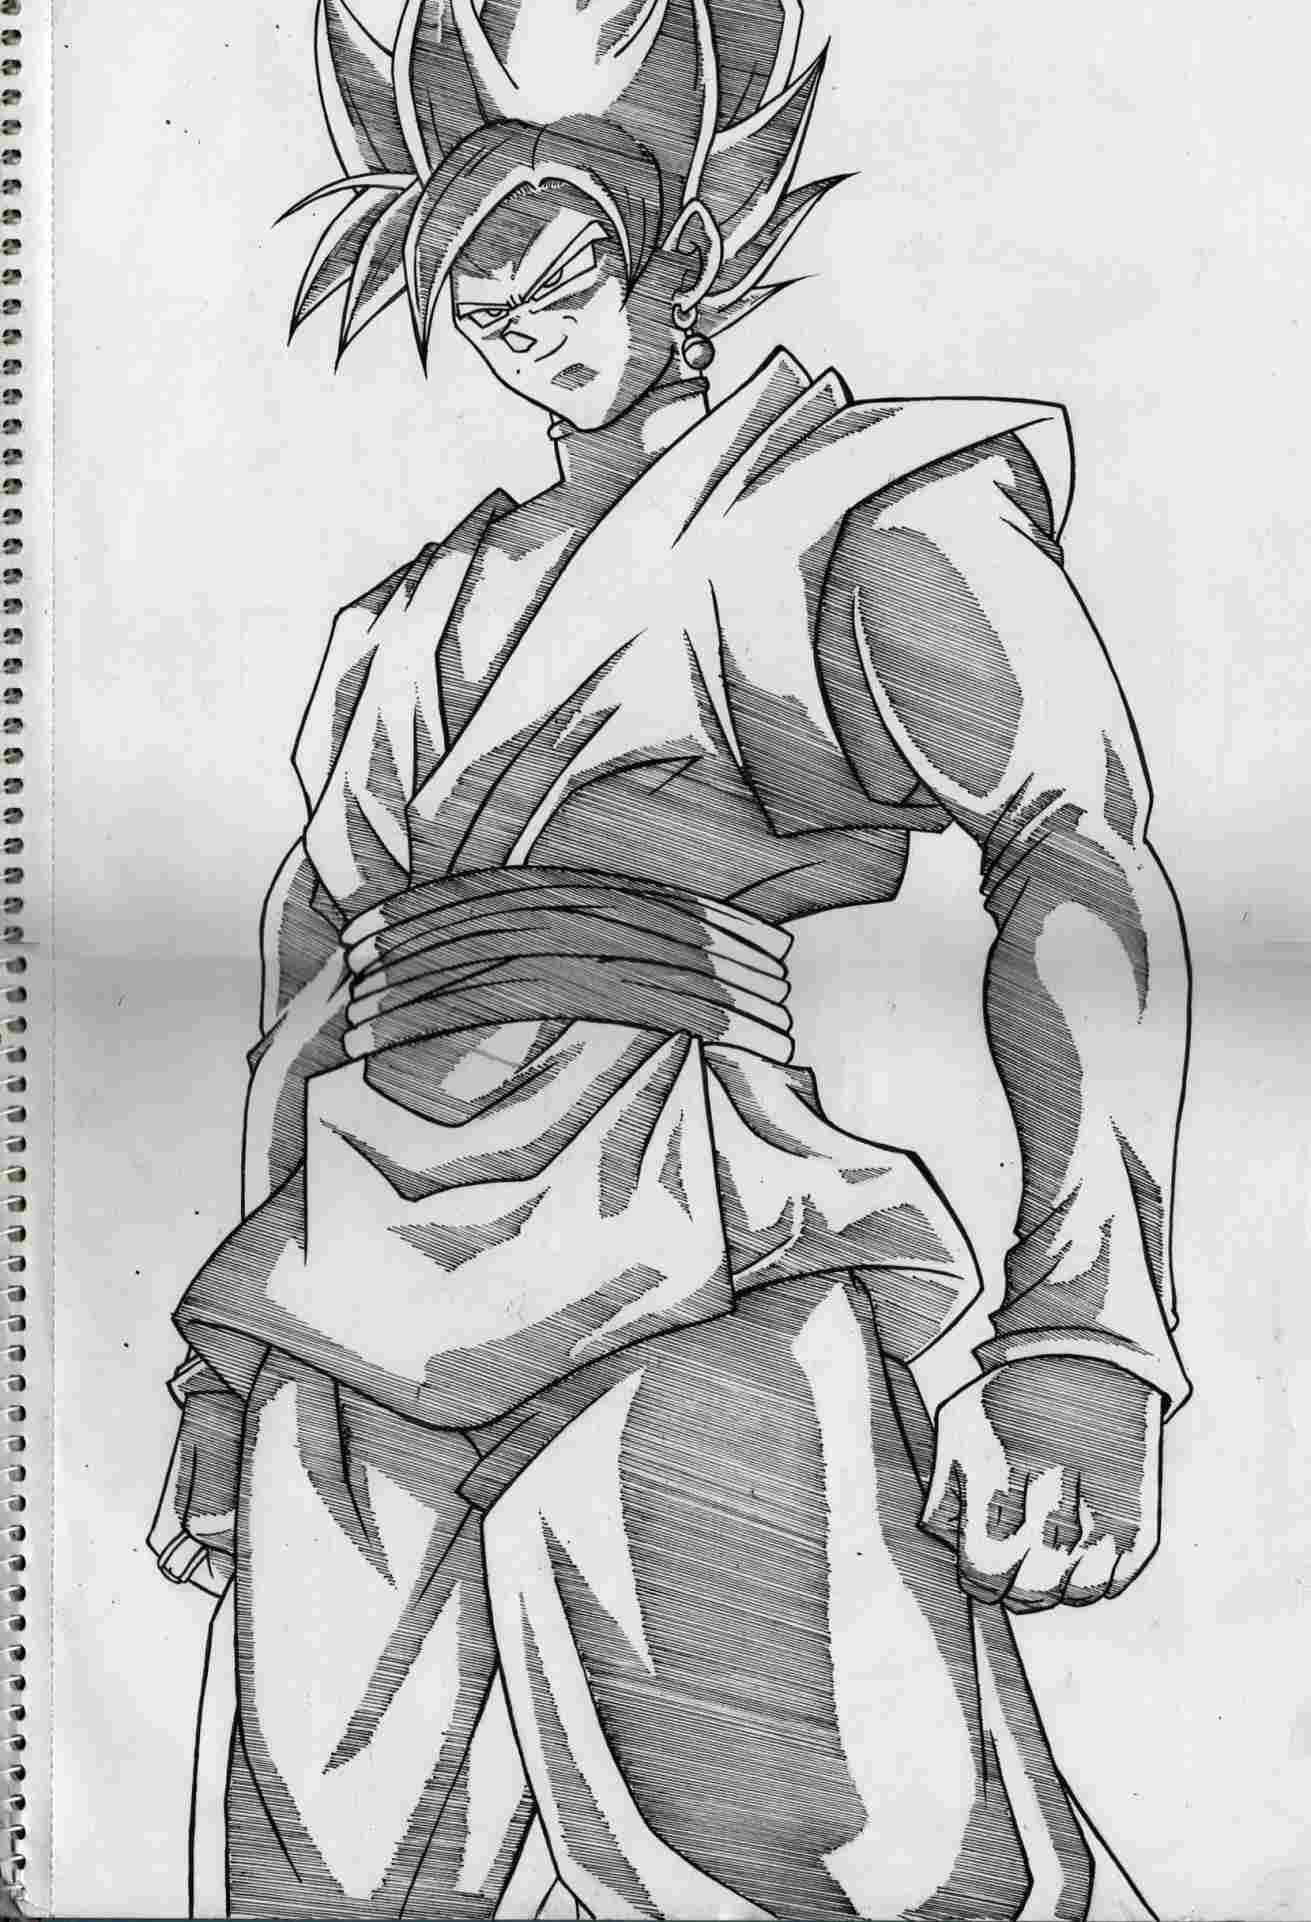 Goku Pencil Drawing at Explore collection of Goku